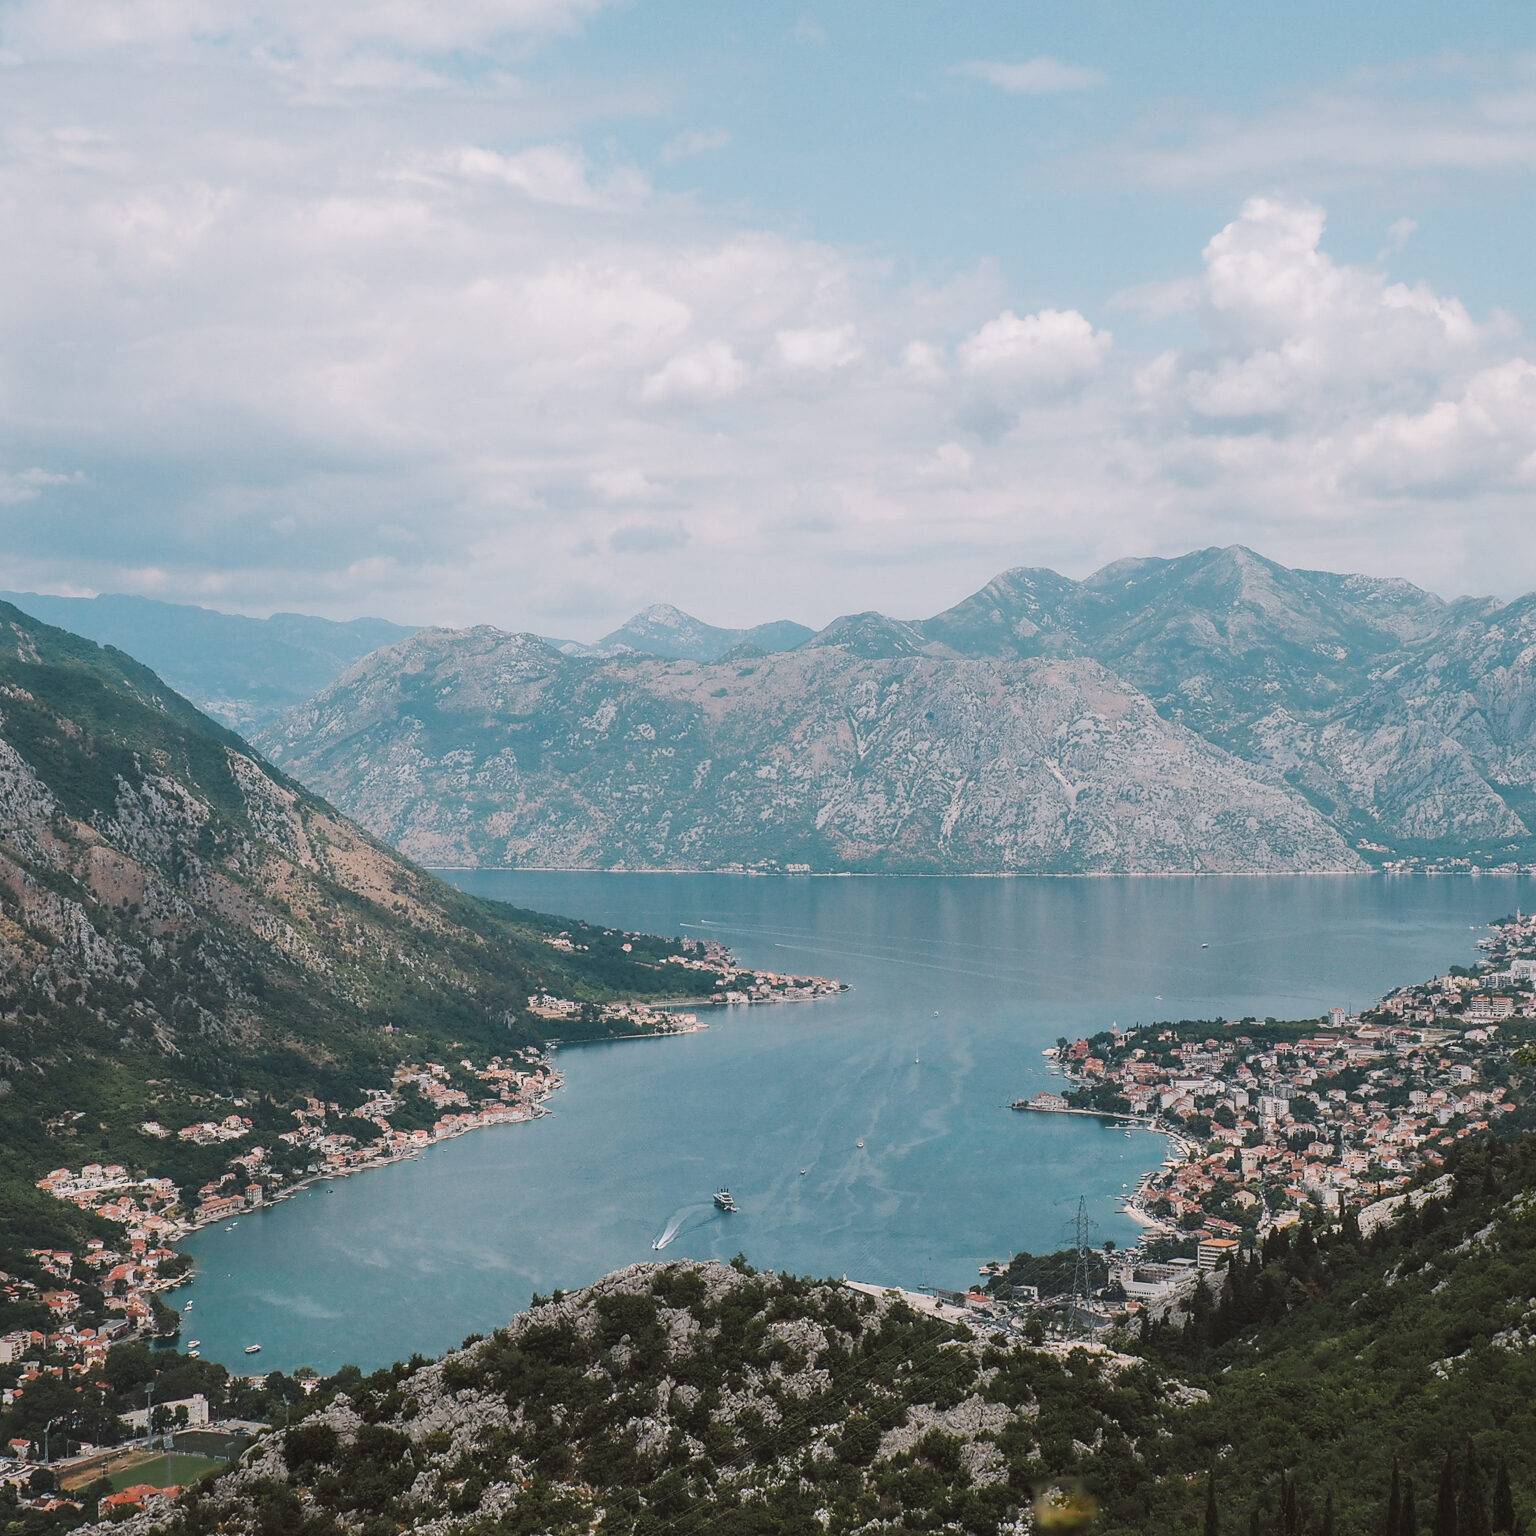 Malerisch liegt der Kotor-Fjord zwischen den Hügelketten.